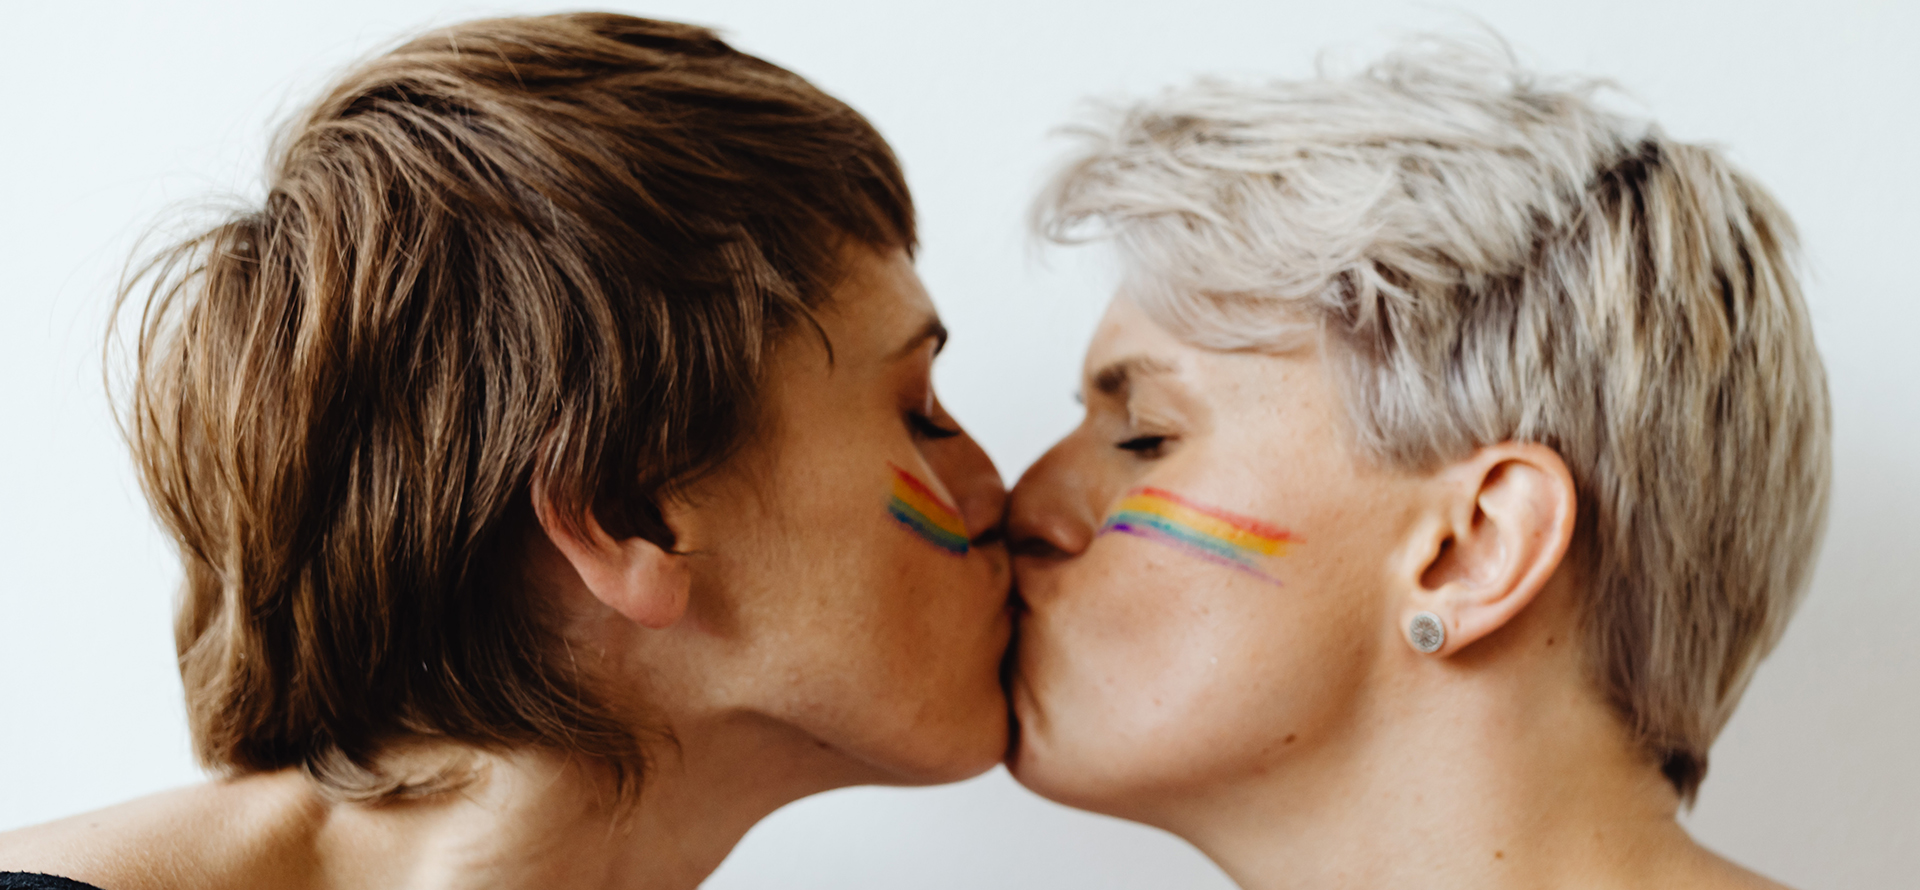 Um par de lésbicas se beijando.